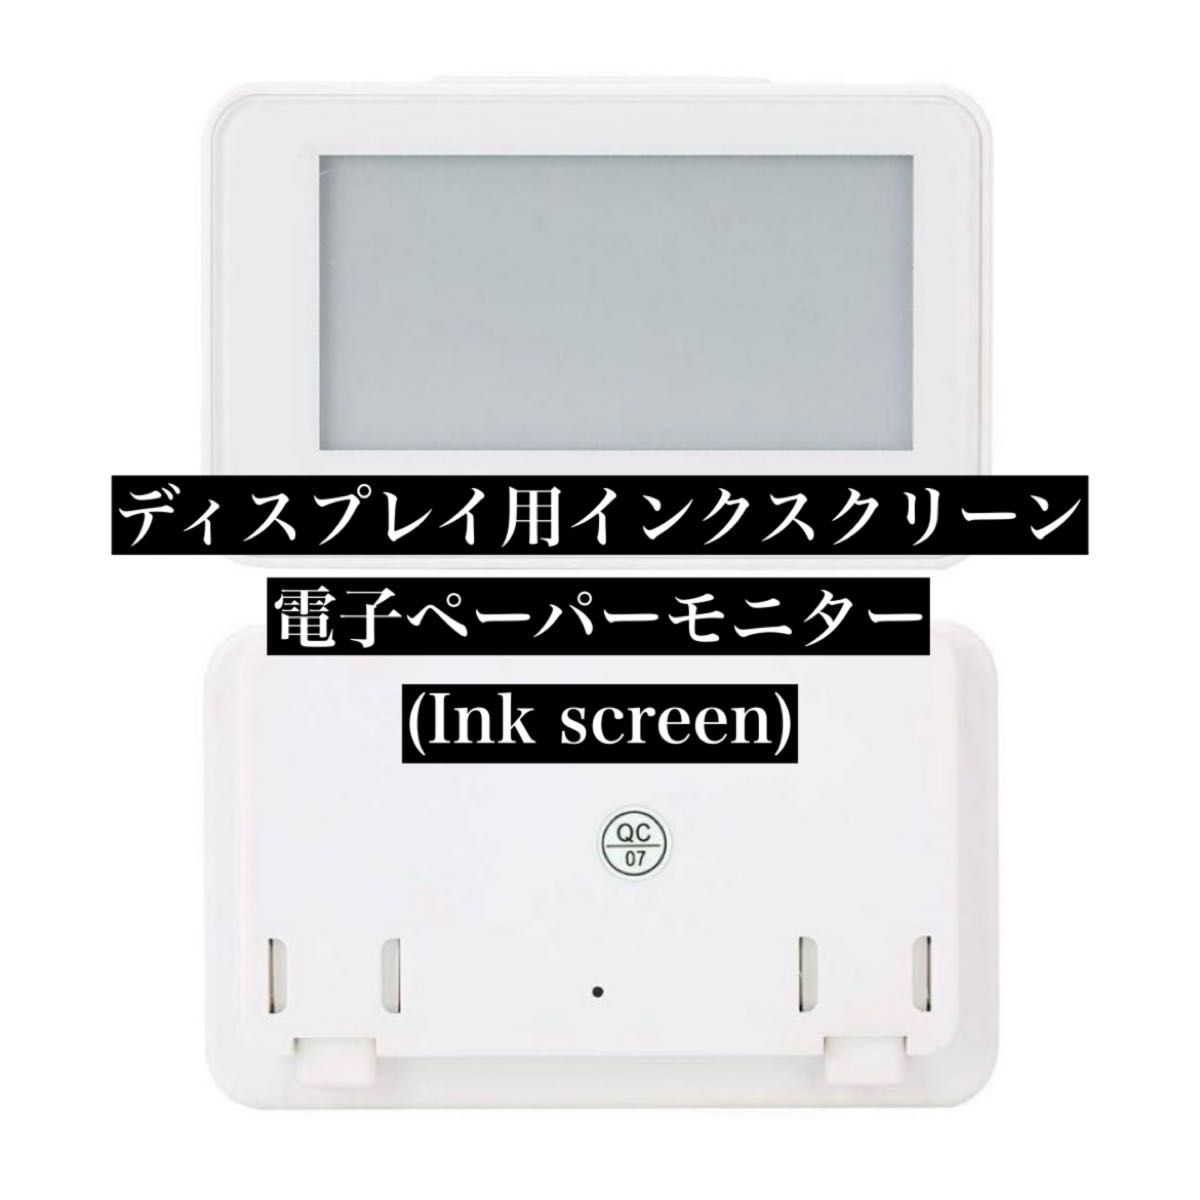 ディスプレイ用 インクスクリーン 電子ペーパーモニター (Ink screen)